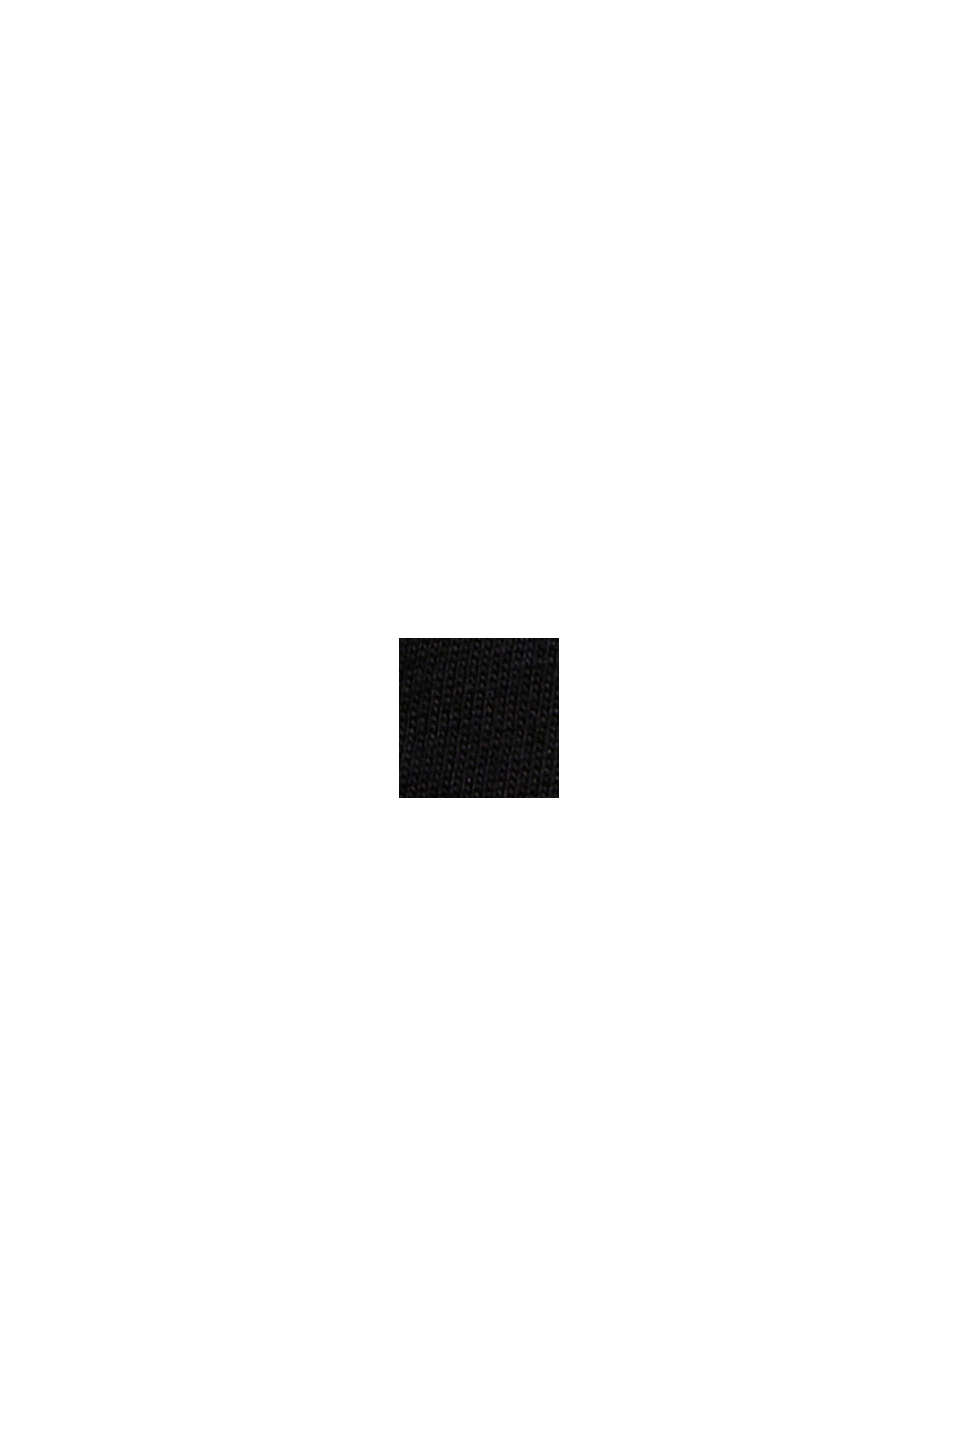 오가닉 코튼 소재의 아플리케 로고 티셔츠, BLACK, swatch